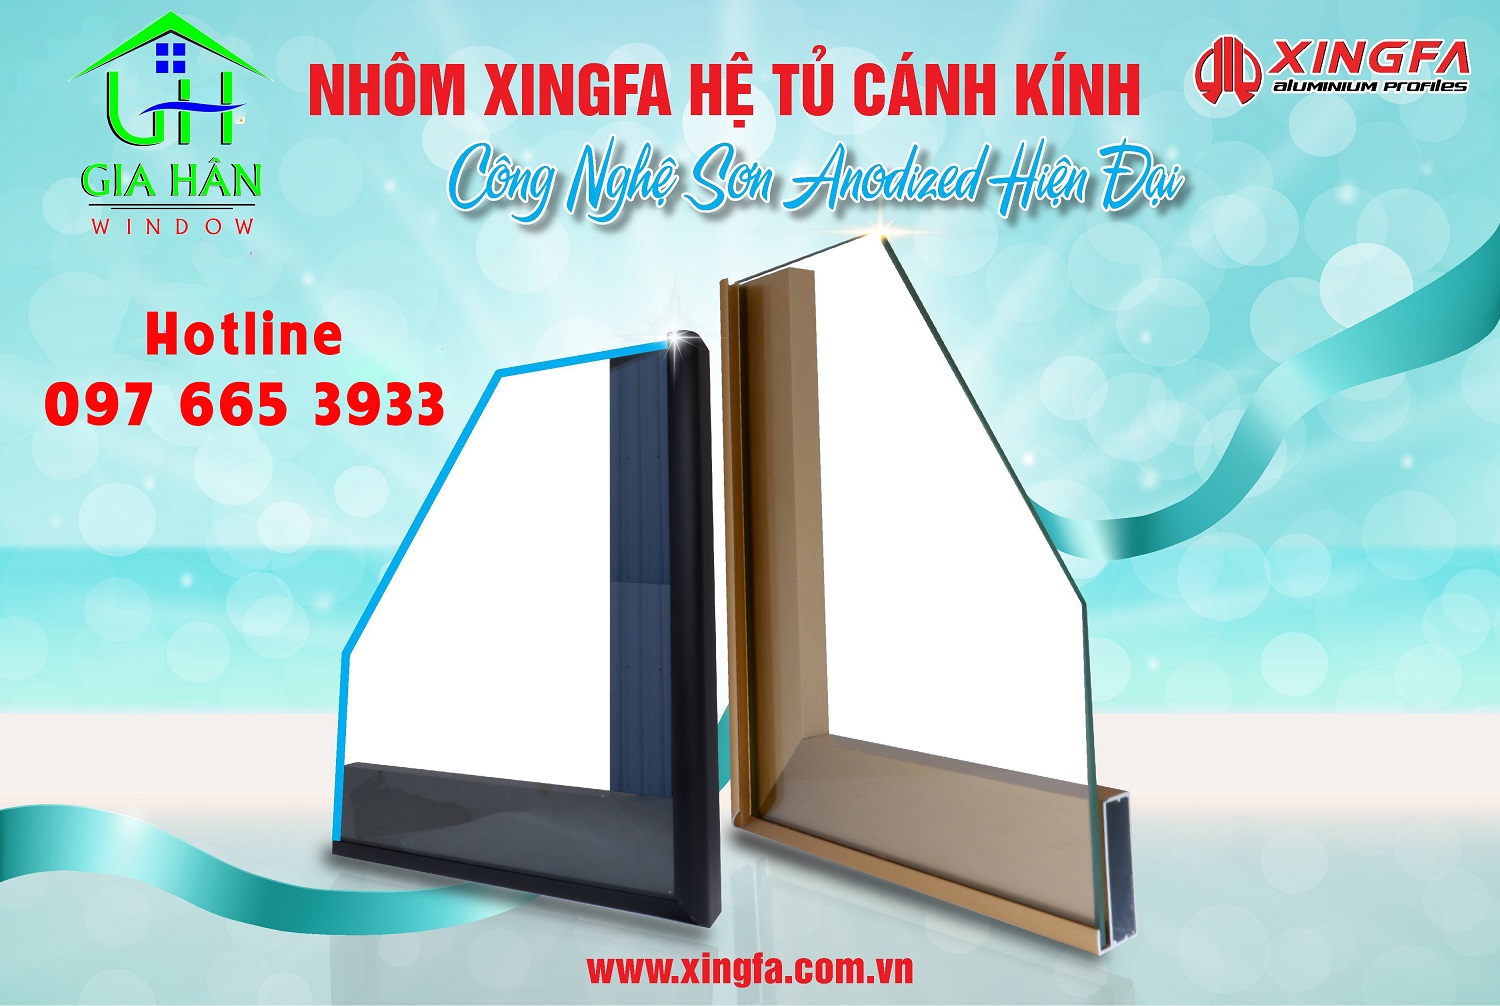 Nhom Xingfa 50